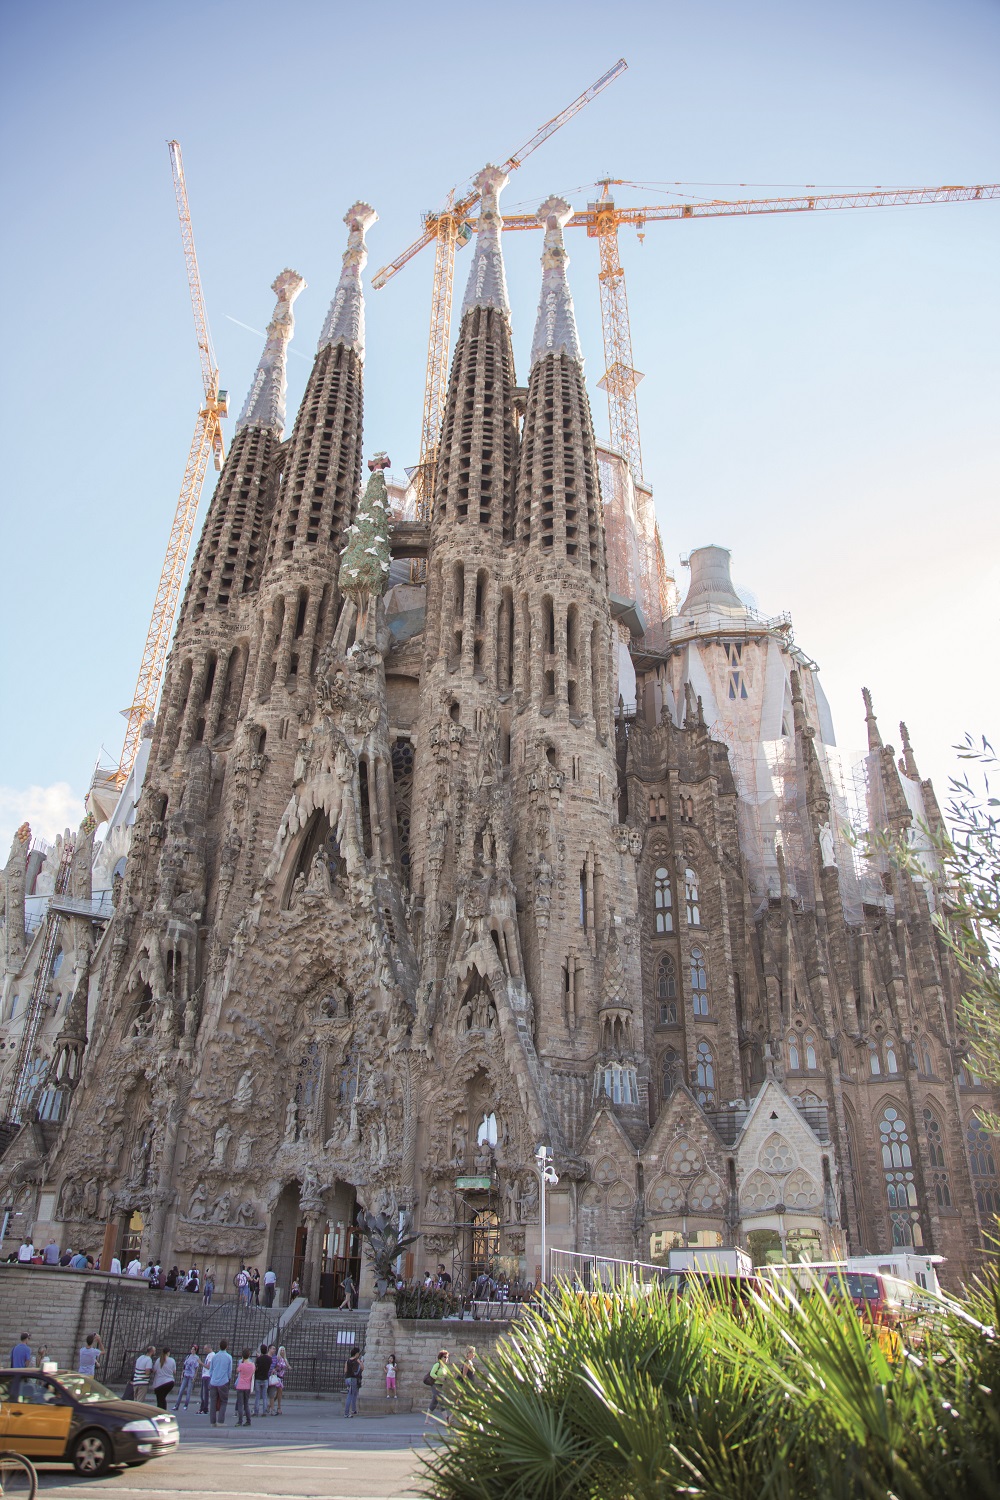 Mein Schiff Reiseziel: Barcelona - Sagrada Familia